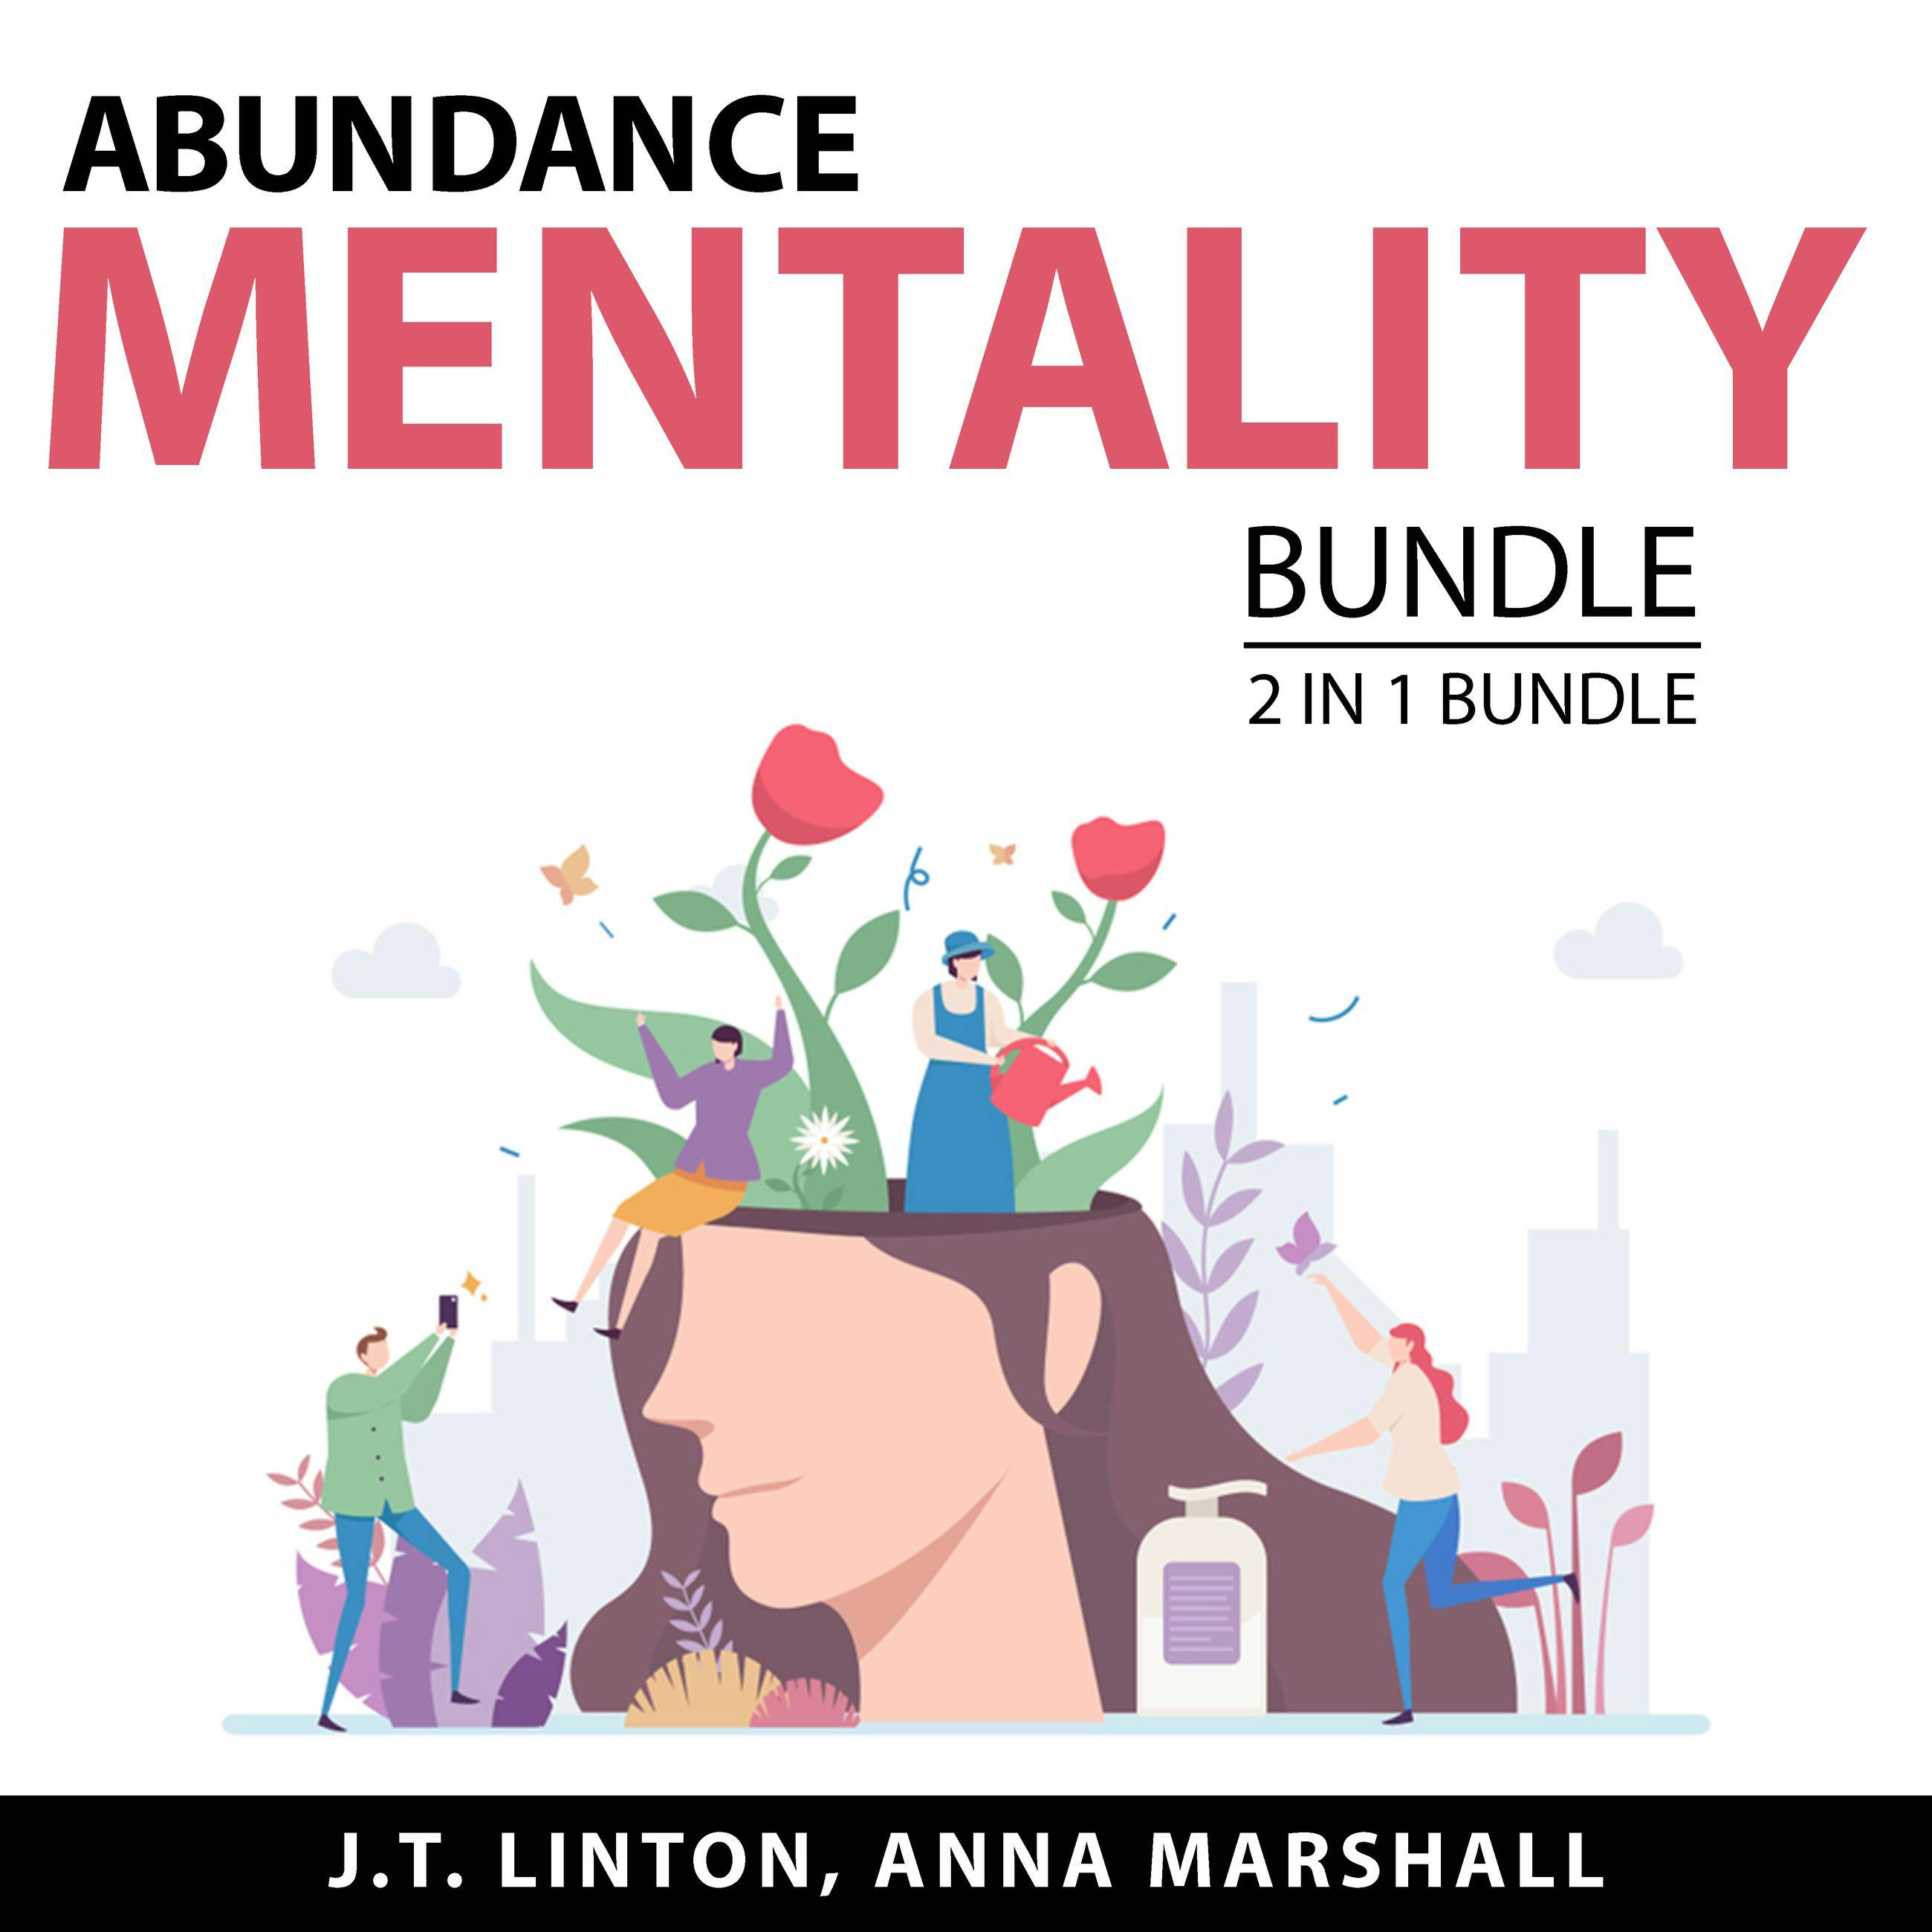 Abundance Mentality Bundle, 2 in 1 Bundle: Abundance Mindset and Power of Abundance Mindset - Anna Marshall, J.T. Linton